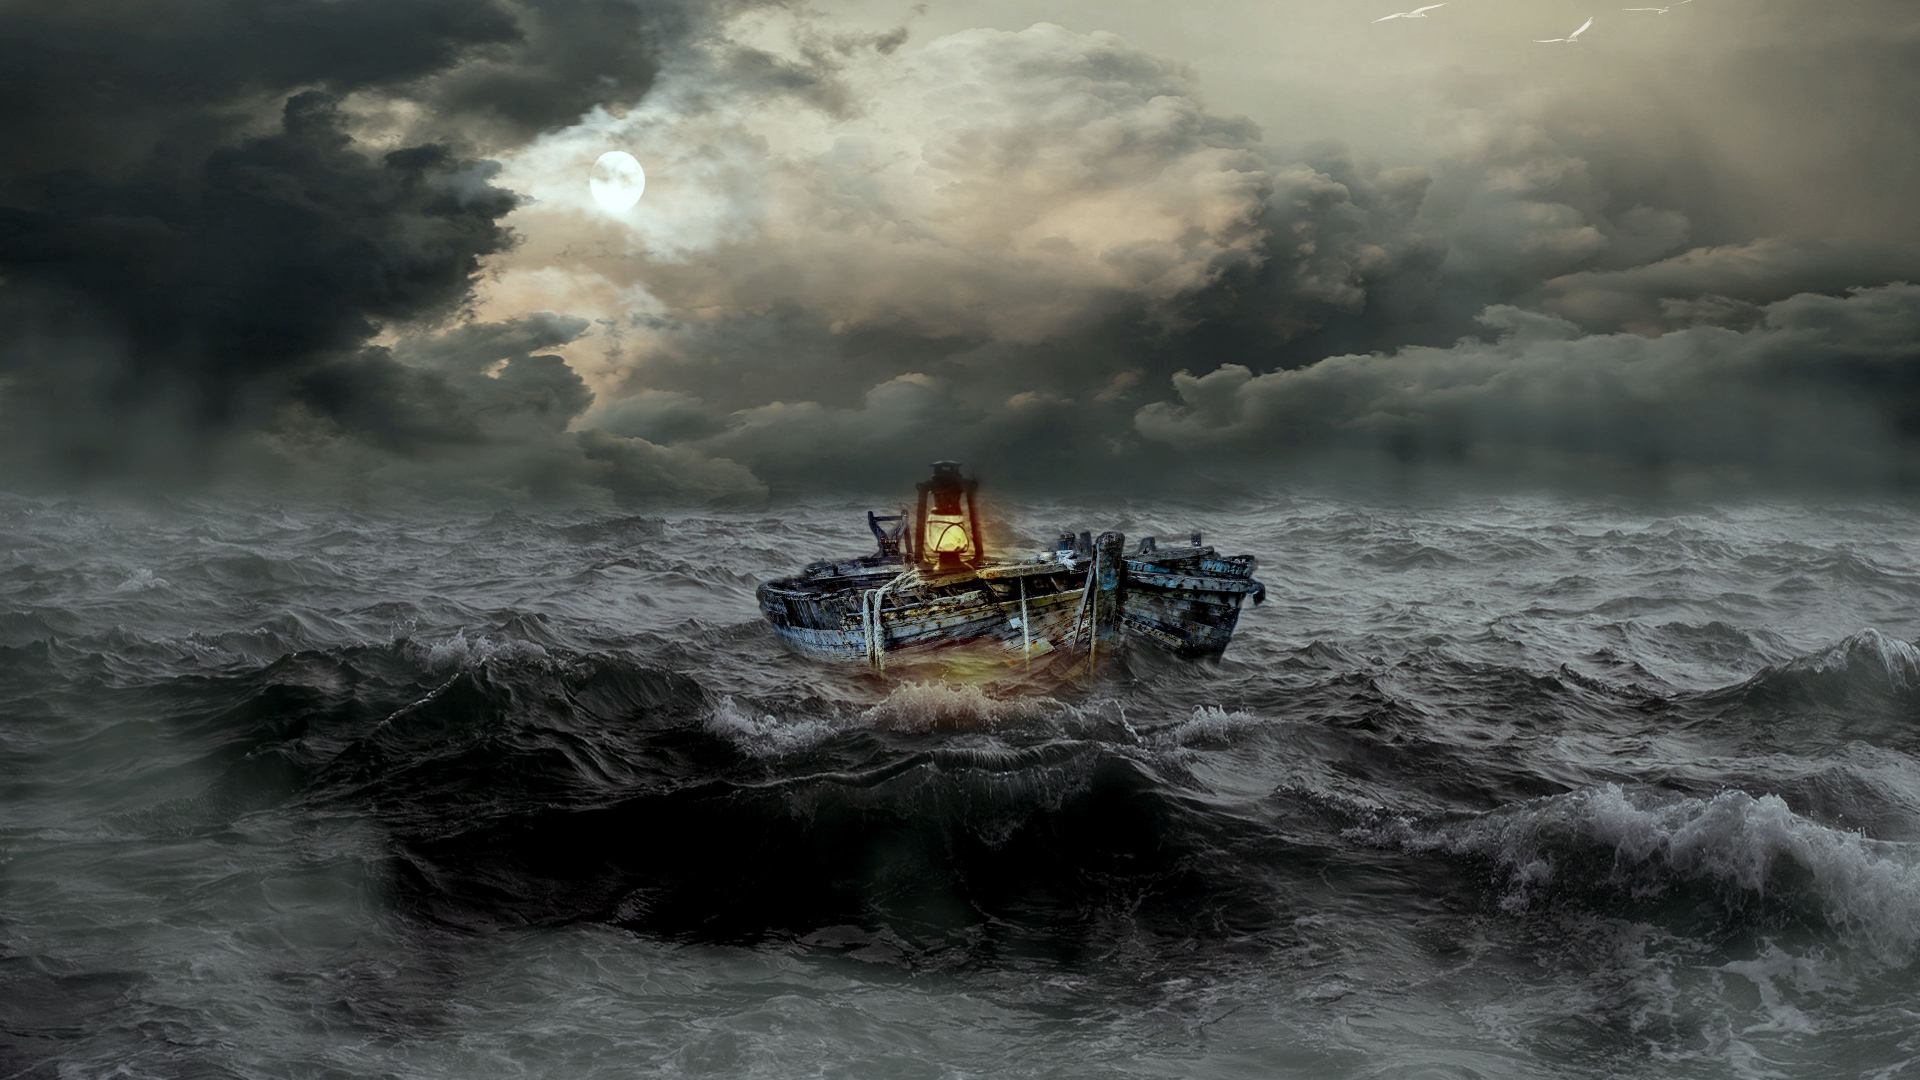 Старая лодка с лампой попала в шторм в море 